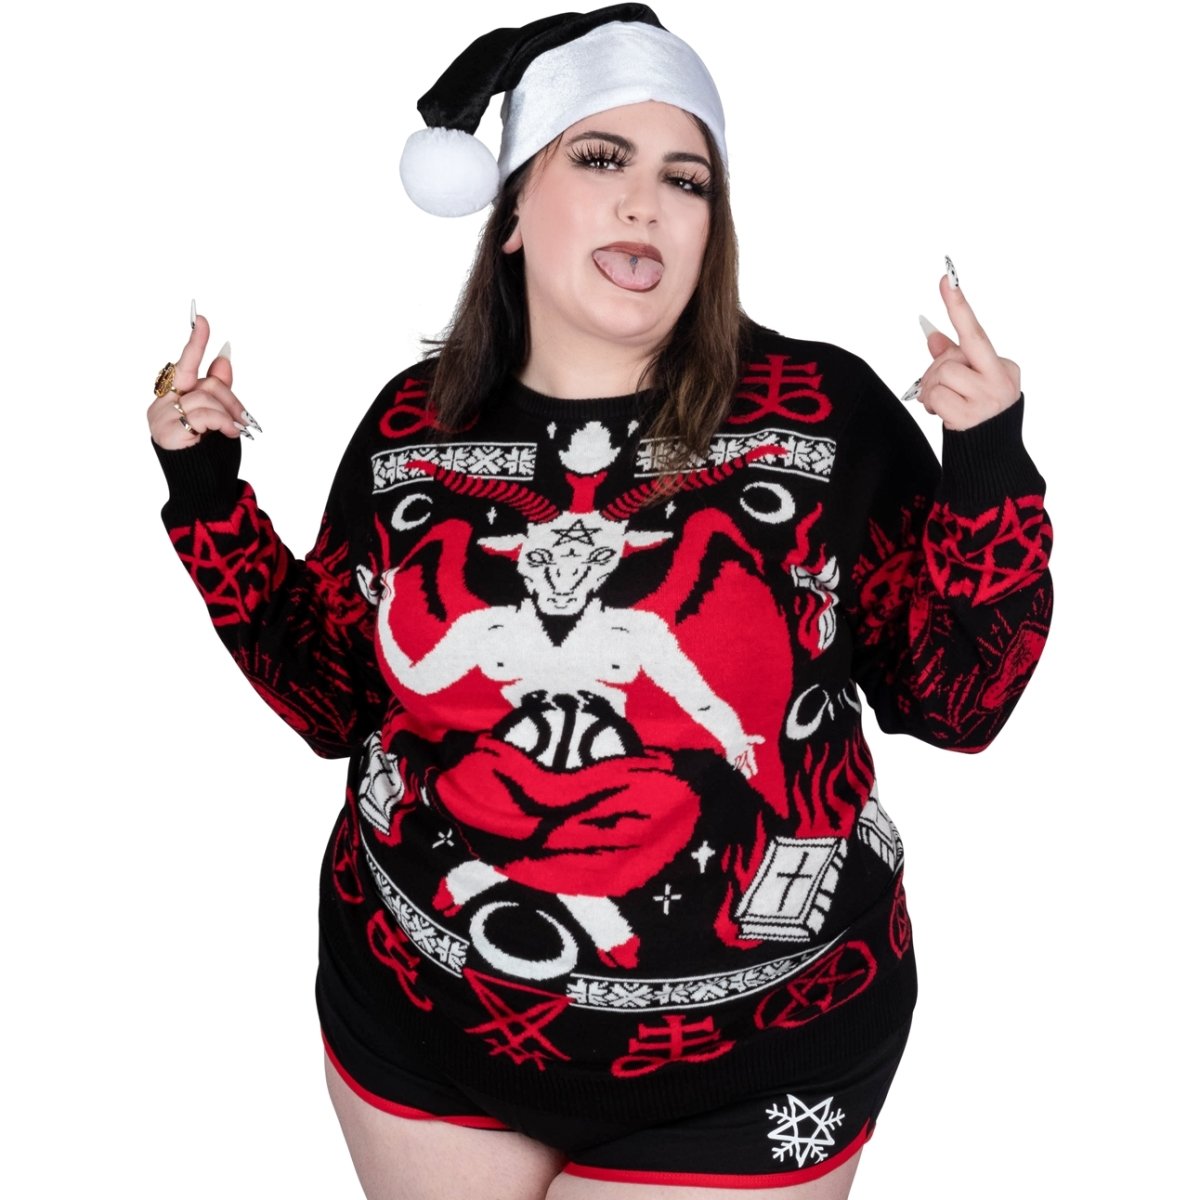 Too Fast | Christmas Sweater | Baphoclaus Satanic Xmas